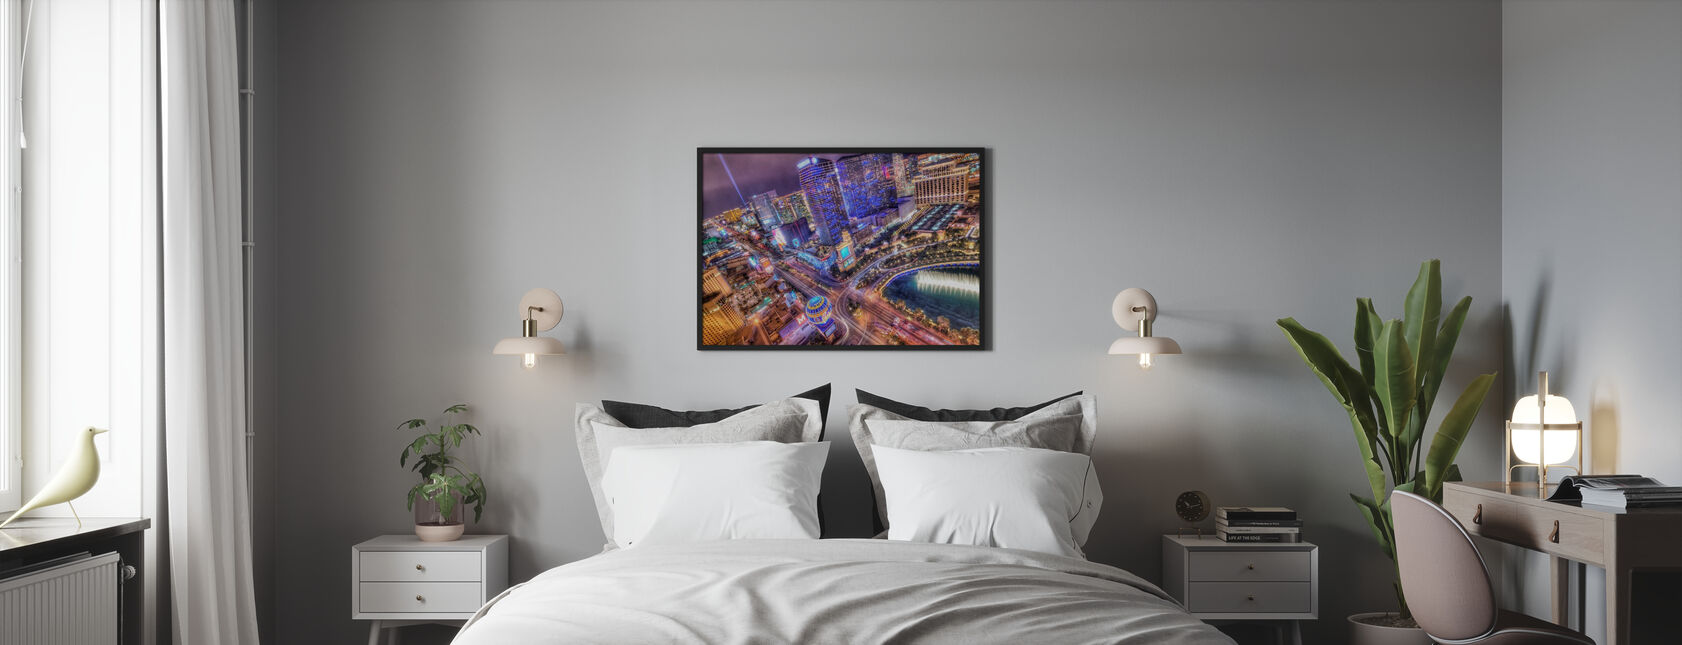 Vegas - Poster - Bedroom